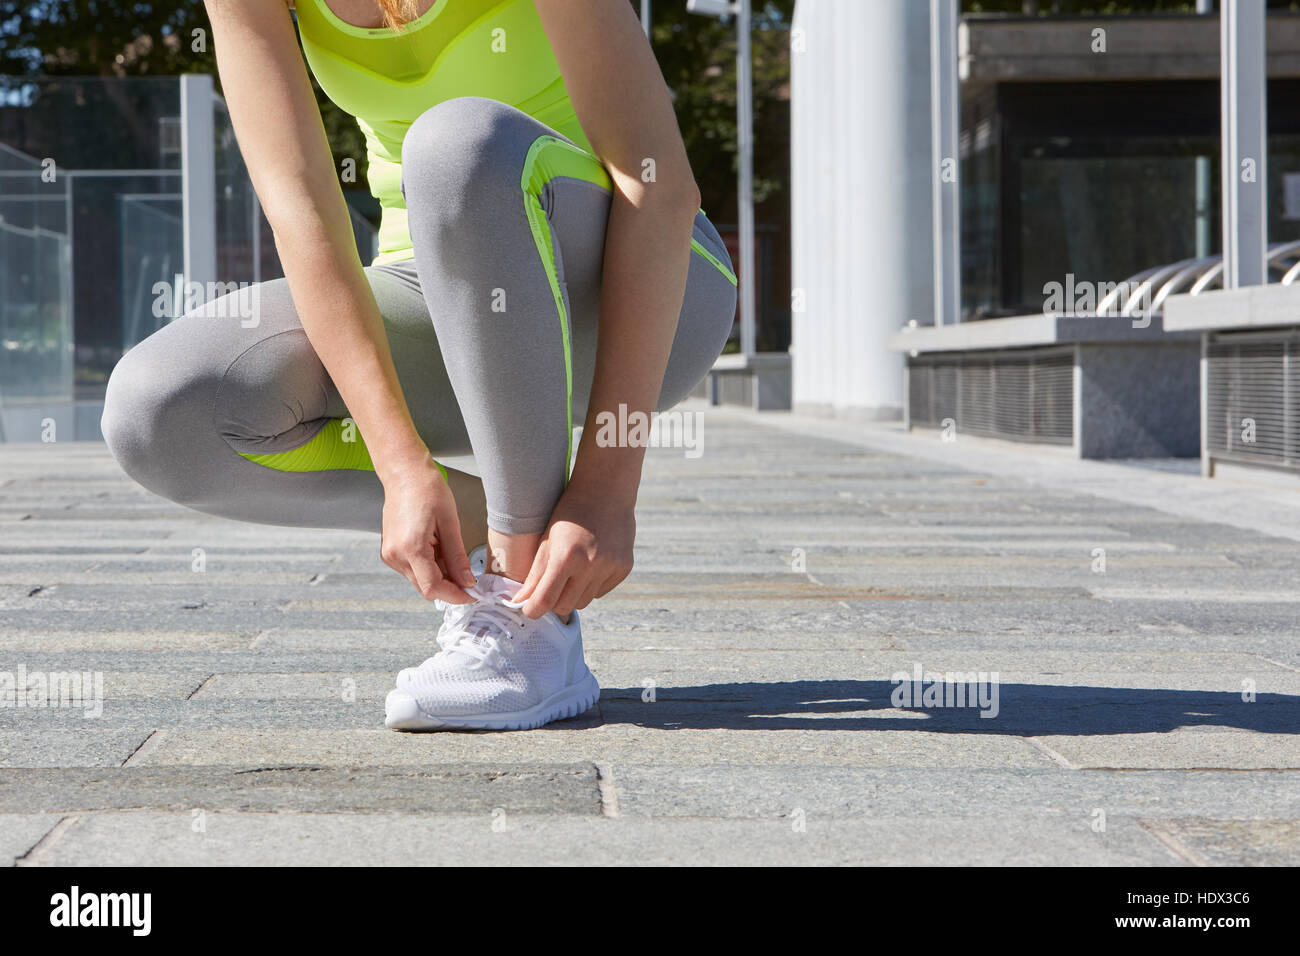 Legatura donna lacci delle scarpe prima di eseguire all'aperto nella città, alla luce del sole Foto Stock